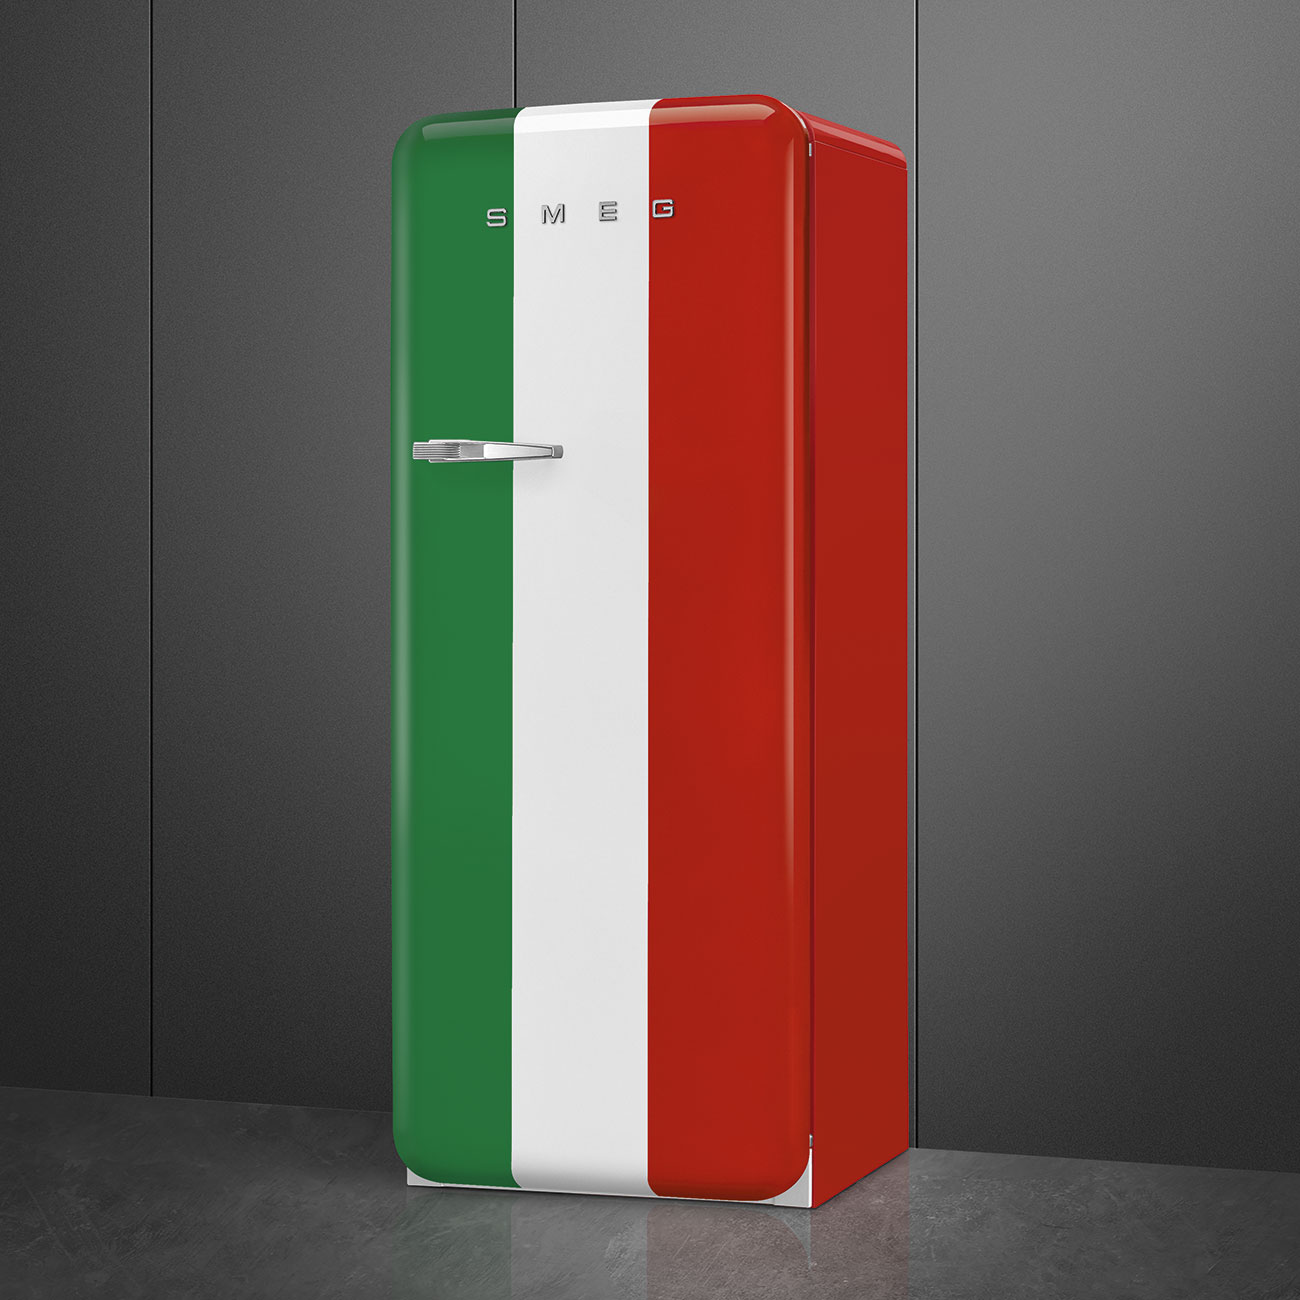 Decorated / Special refrigerator - Smeg_3